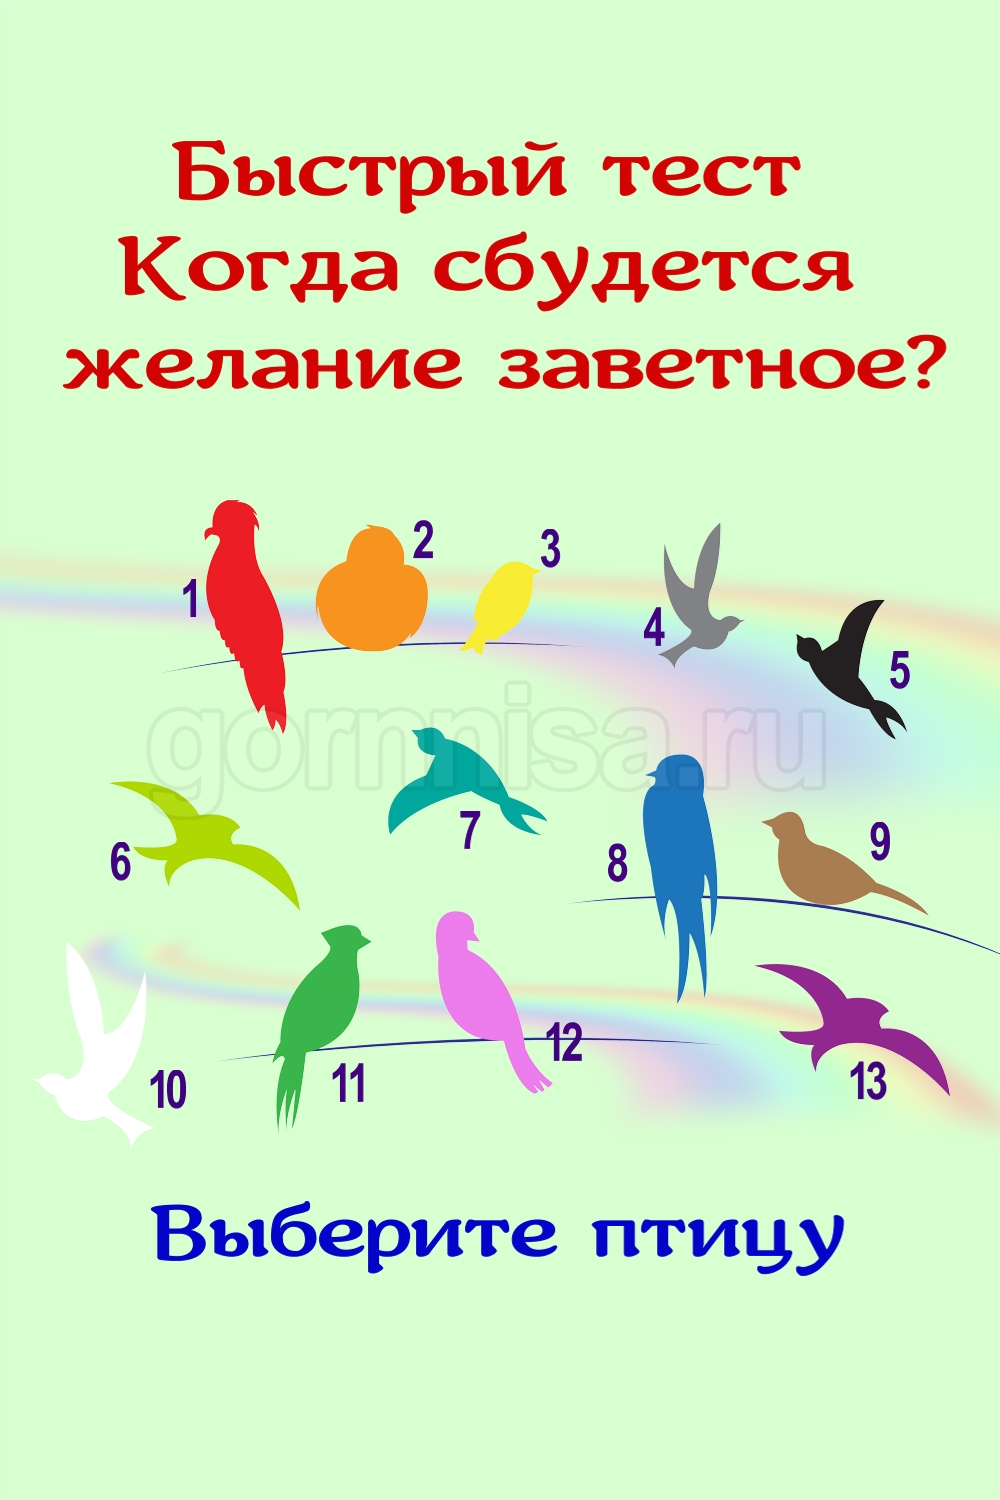 Быстрый тест - Когда сбудется желание заветное - выберите птицу https://gornnisa.ru/